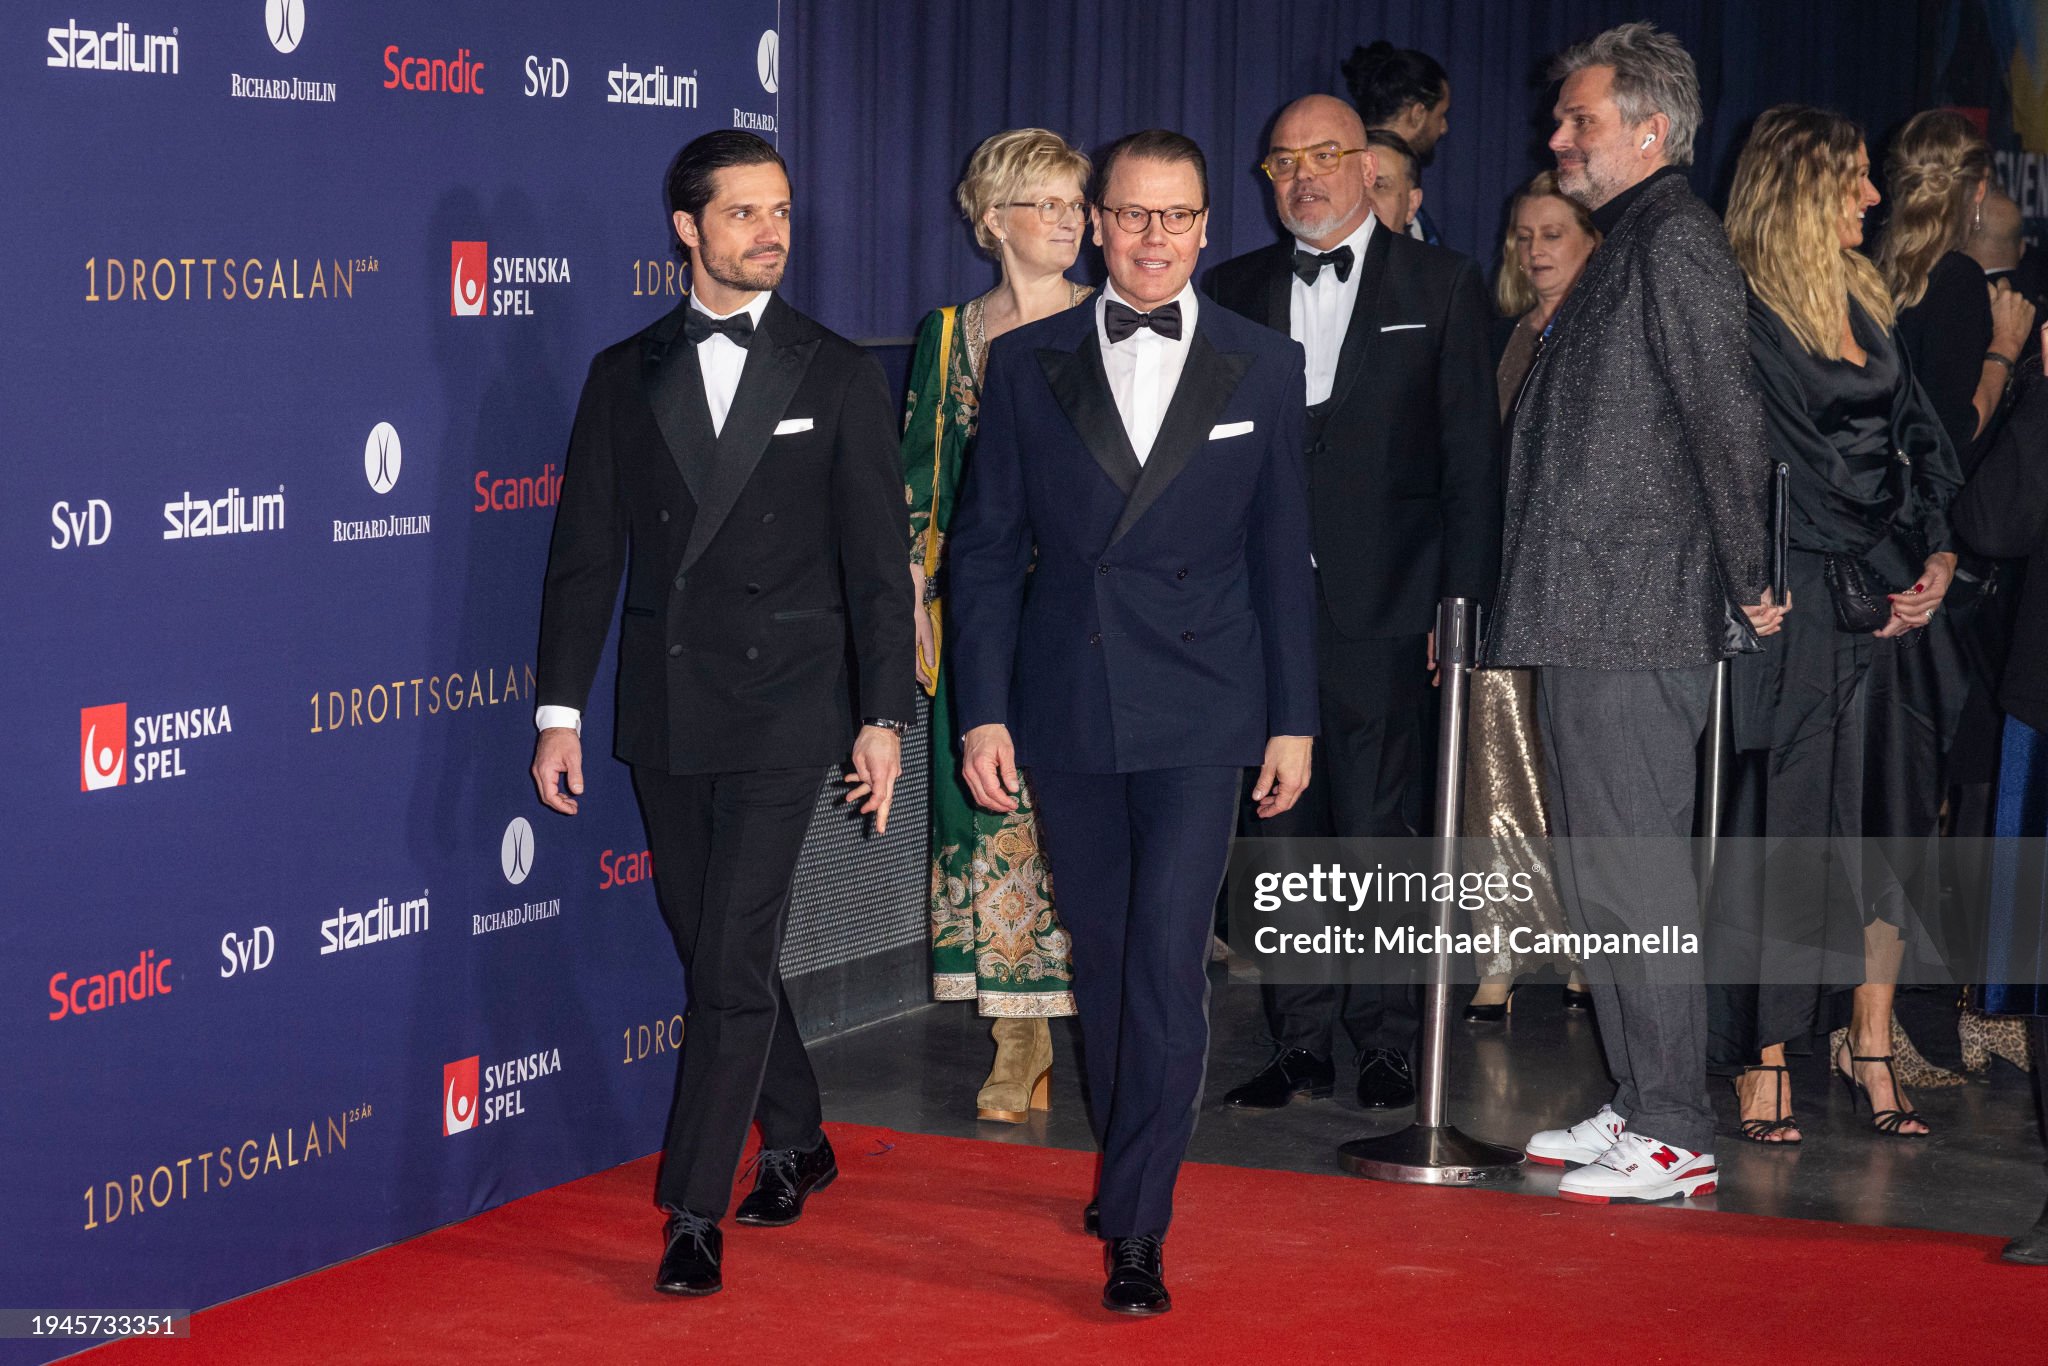 stockholm-sweden-prince-carl-philip-of-sweden-and-prince-daniel-of-sweden-on-the-red-carpet.jpg